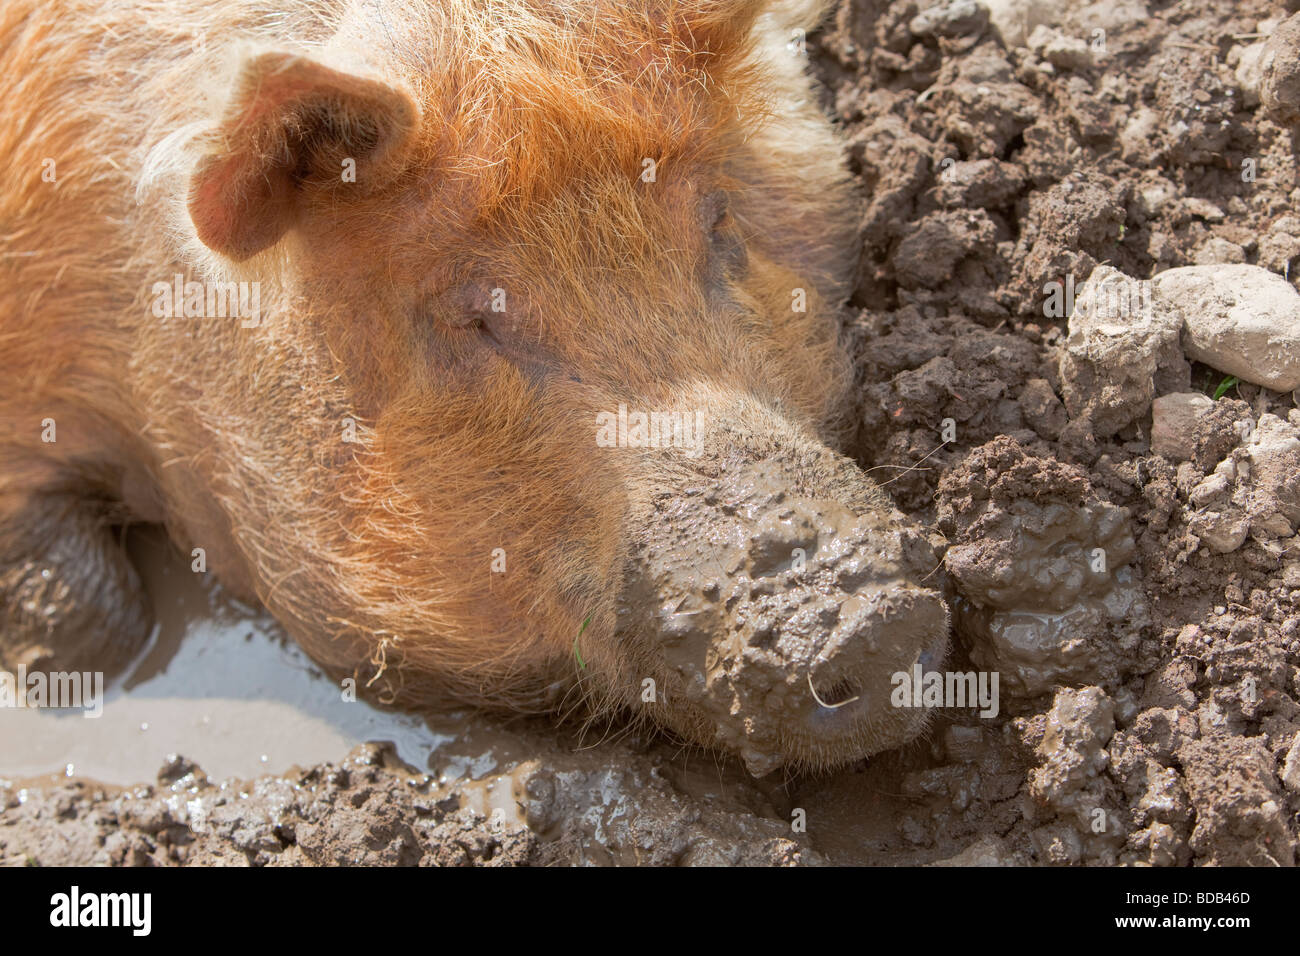 Race Tamworth sow pig se vautrer dans la boue Banque D'Images